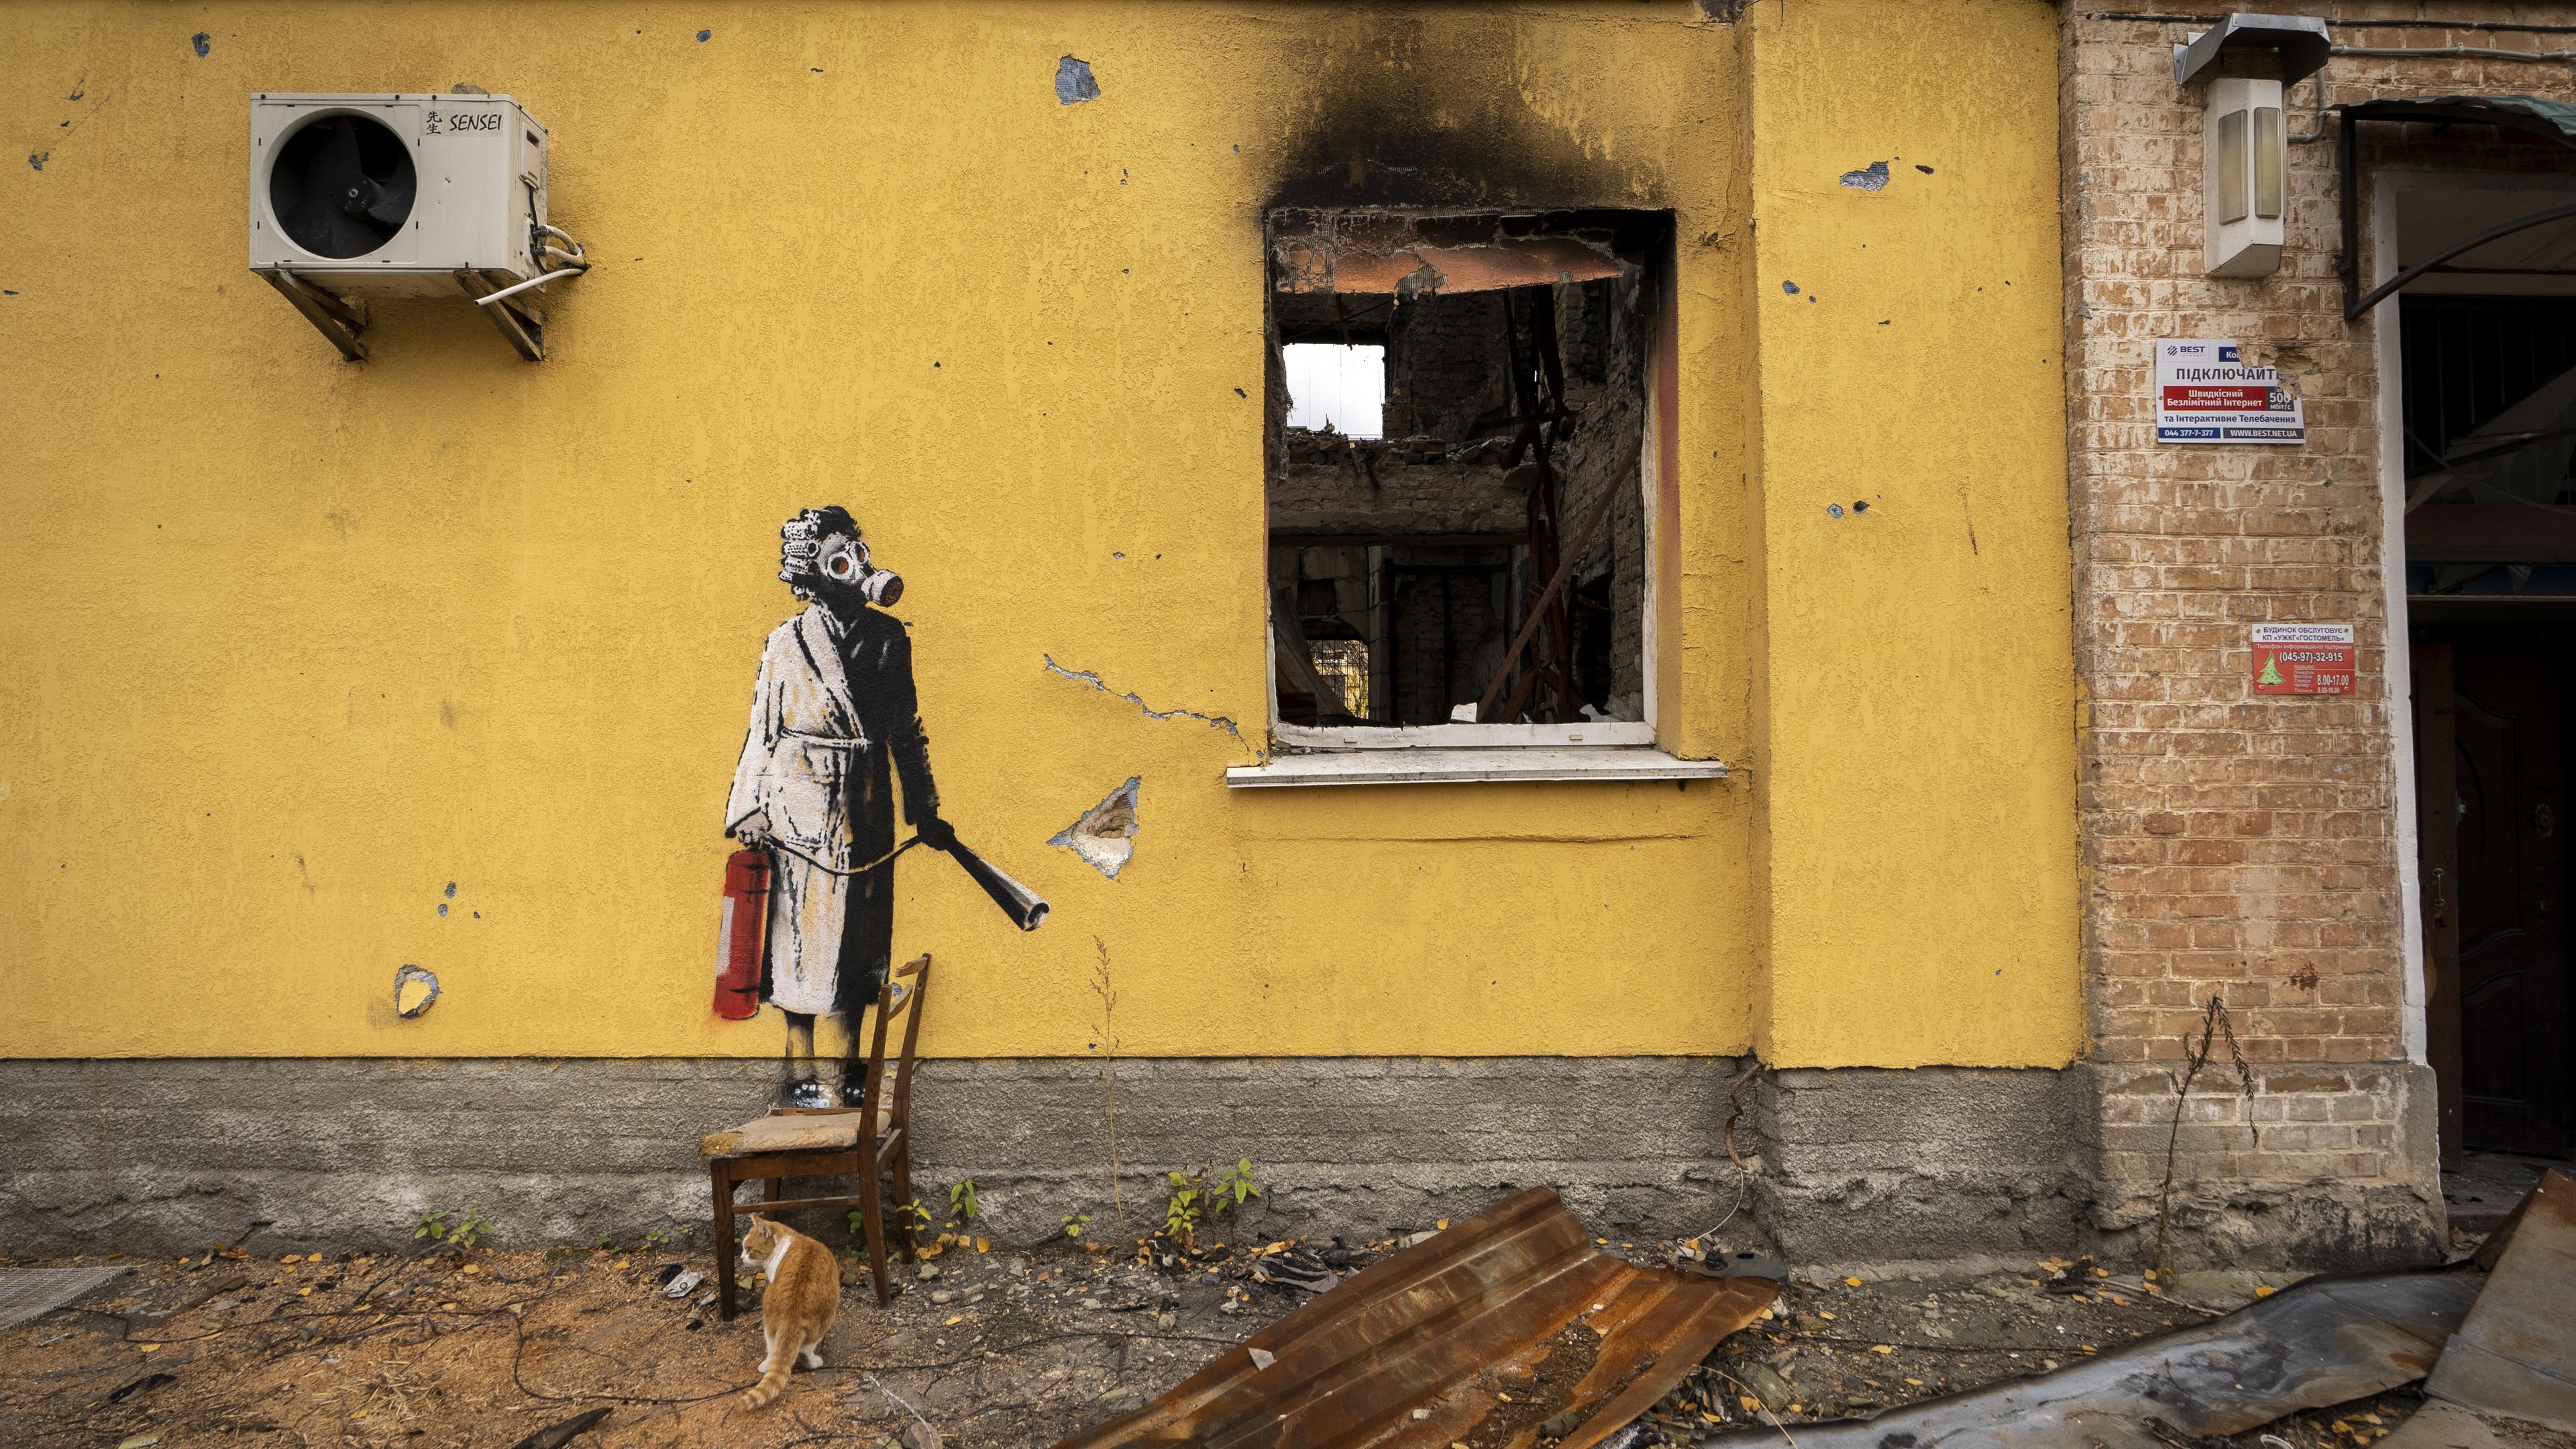 An einer Hauswand ist ein Bild des Streetart-Künstlers Banksy, das eine Frau mit Lockenwicklern und Gasmaske zeigt.